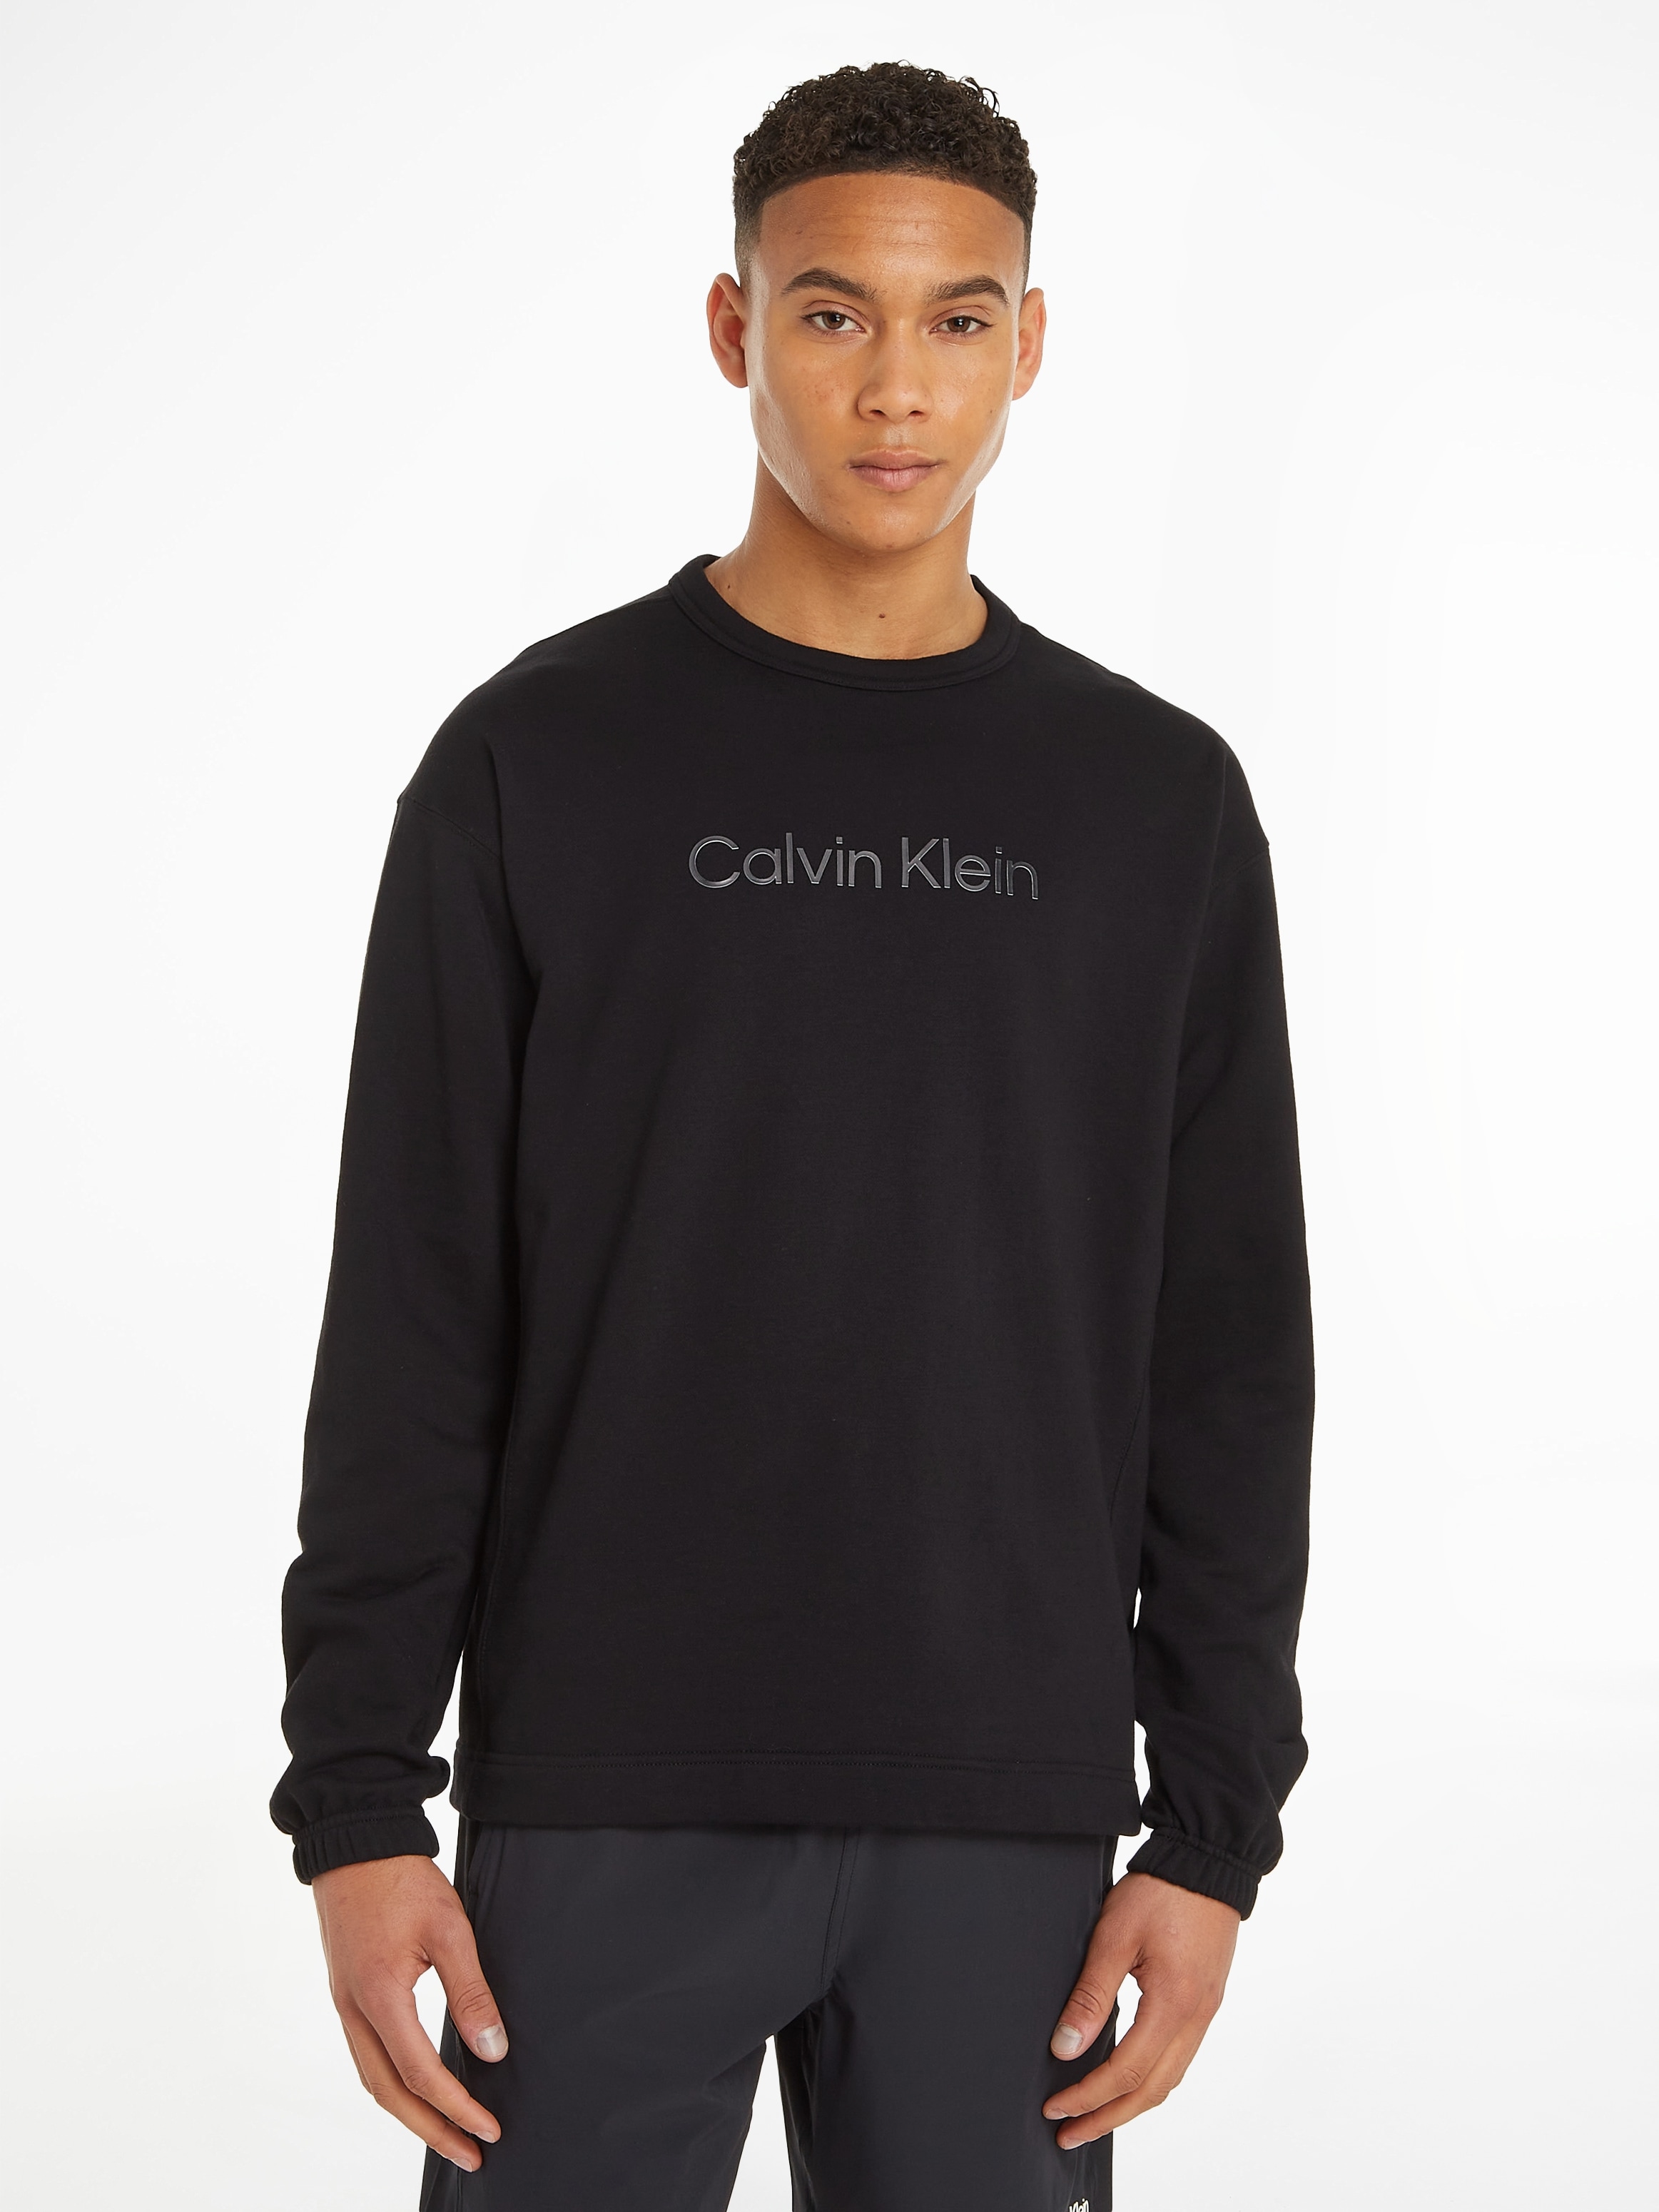 shoppen online Sweatshirt OTTO PW« Klein Calvin bei »Sweatshirt Sport